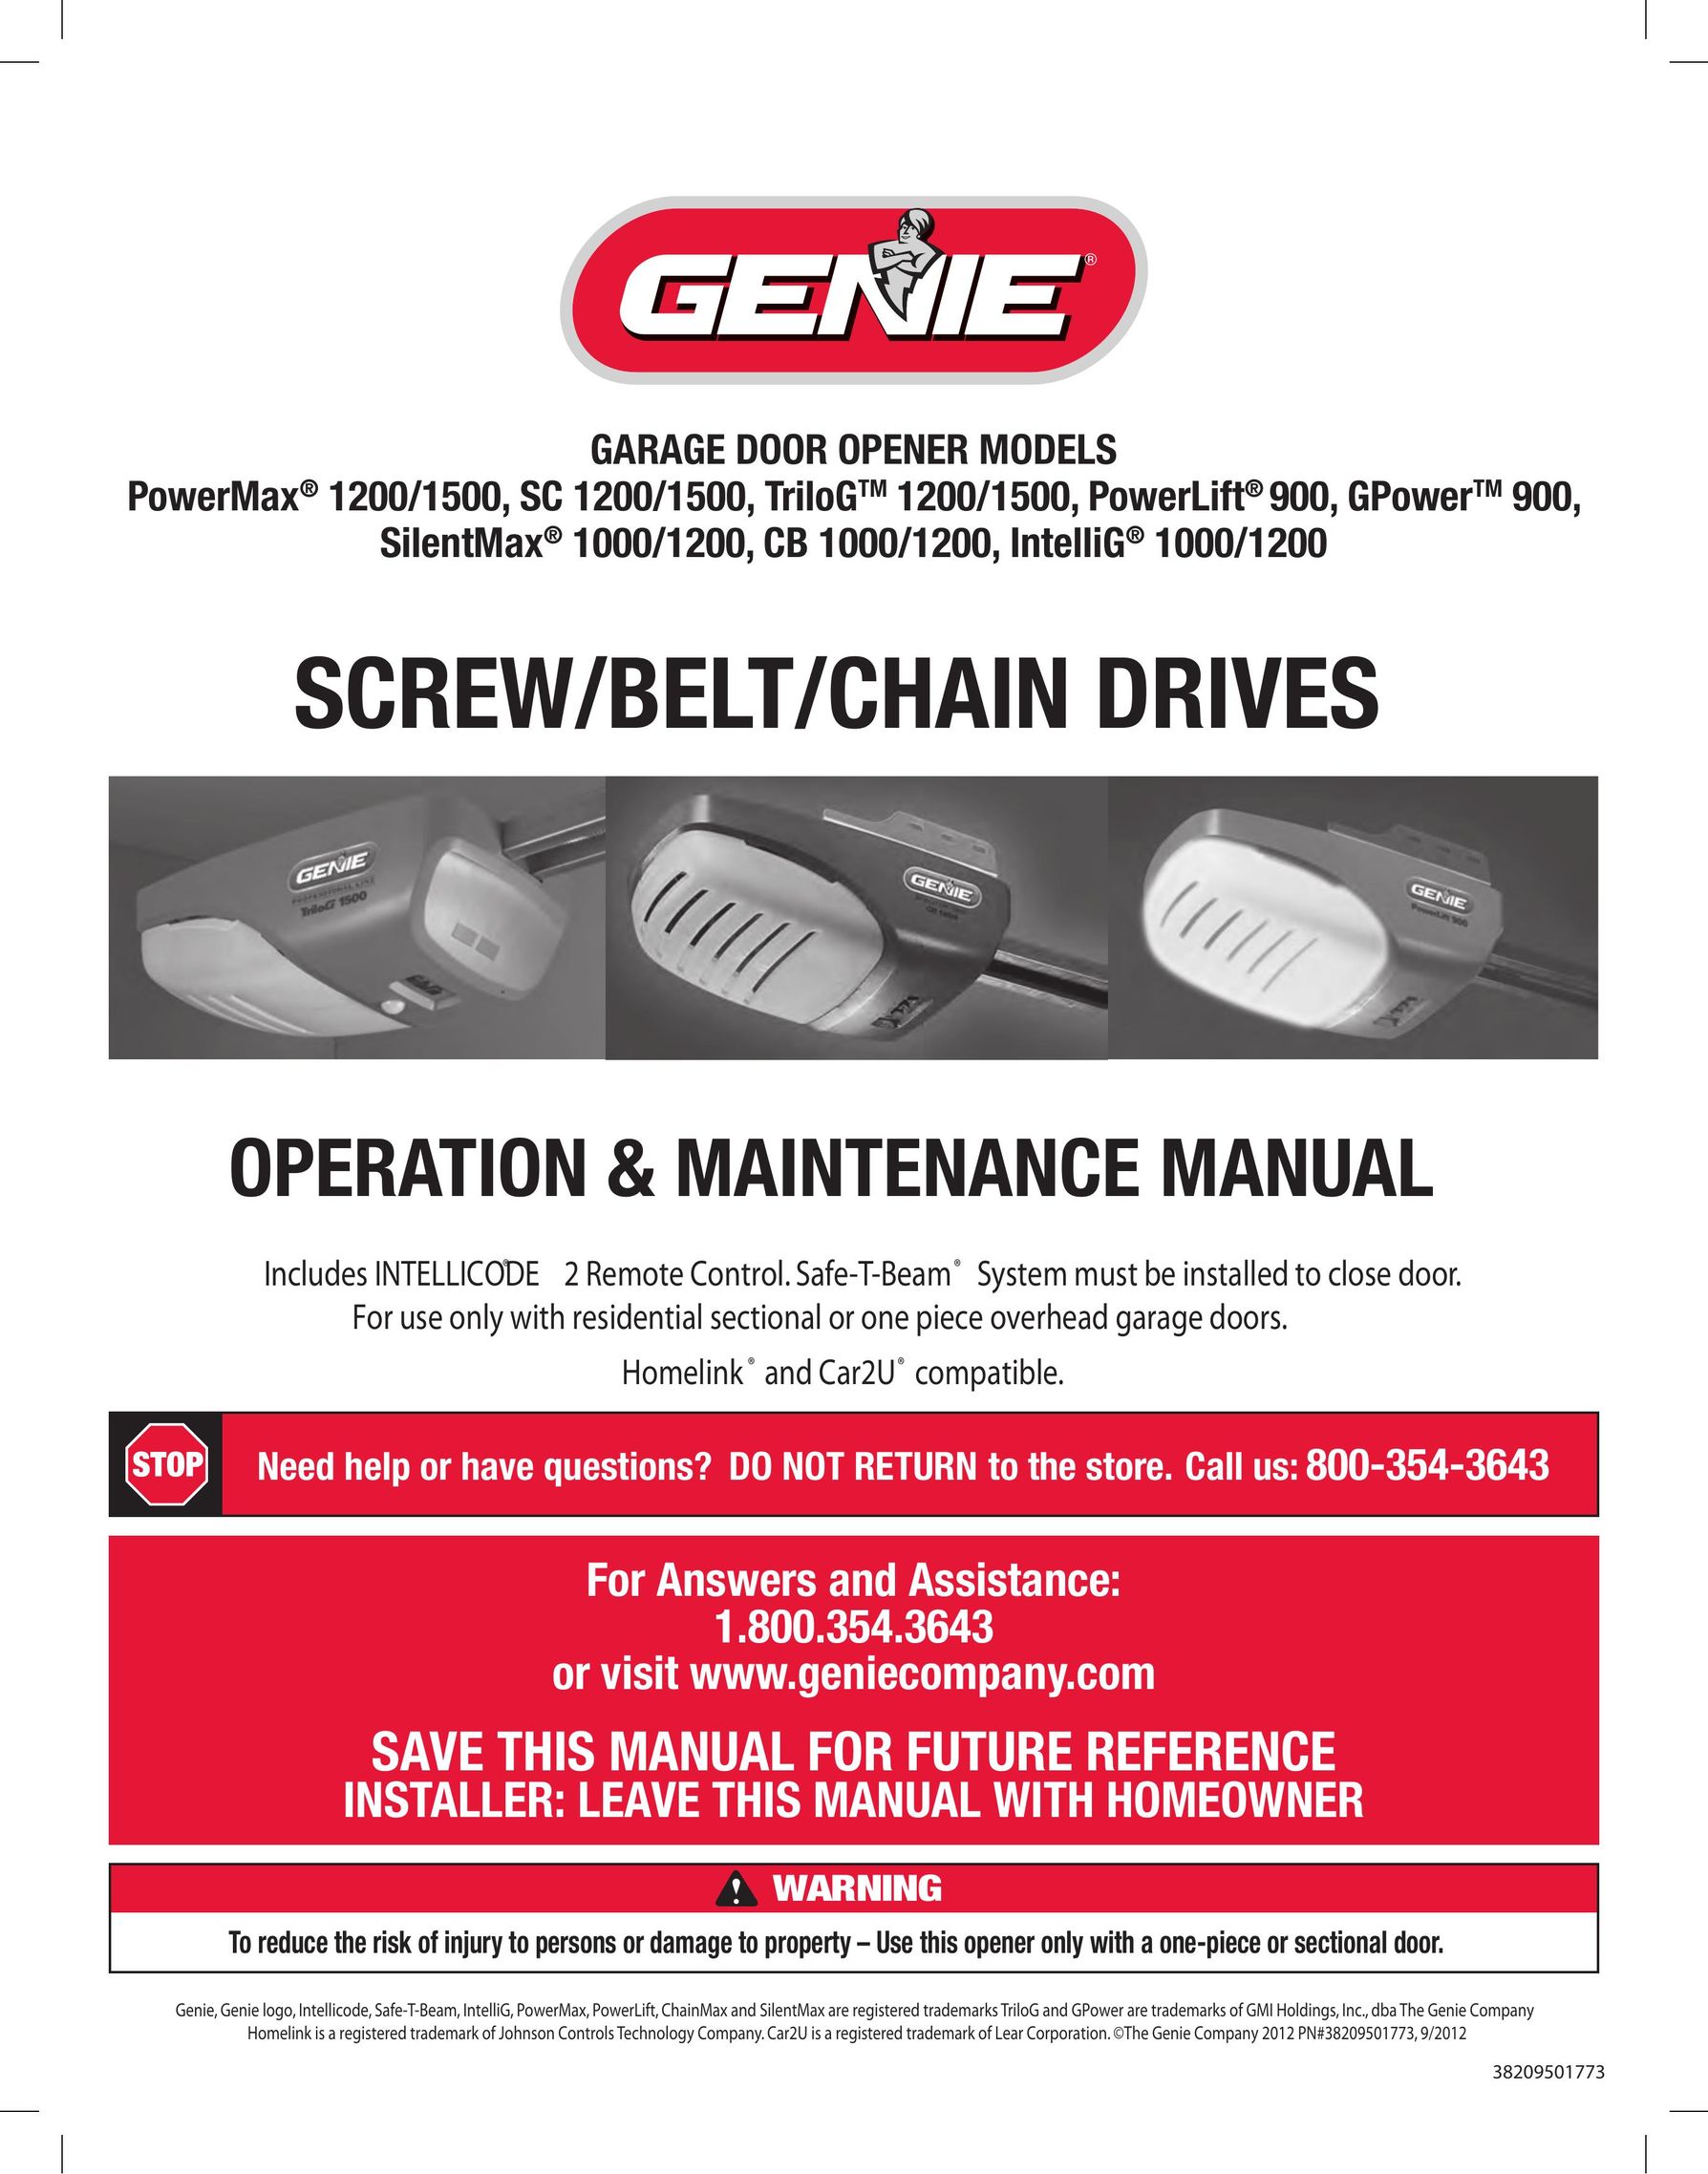 Genie 1200/1500 Garage Door Opener User Manual